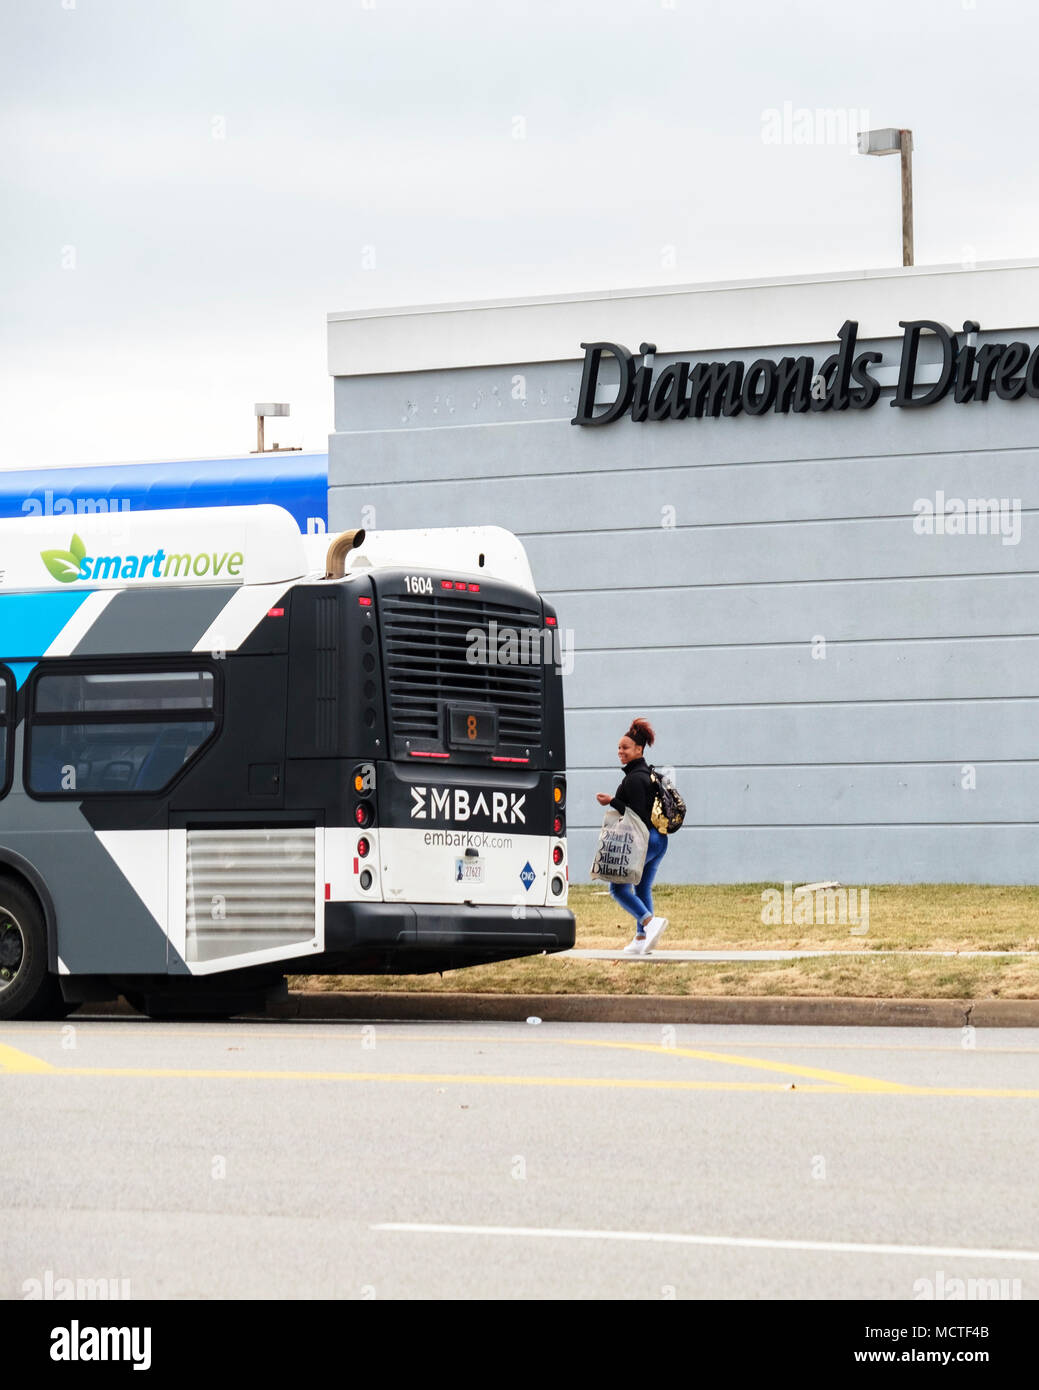 Un americano africano donna prepairs a bordo un Oklahoma City bus davanti di diamanti Direct store. Oklahoma City, Oklahoma, Stati Uniti d'America. Foto Stock